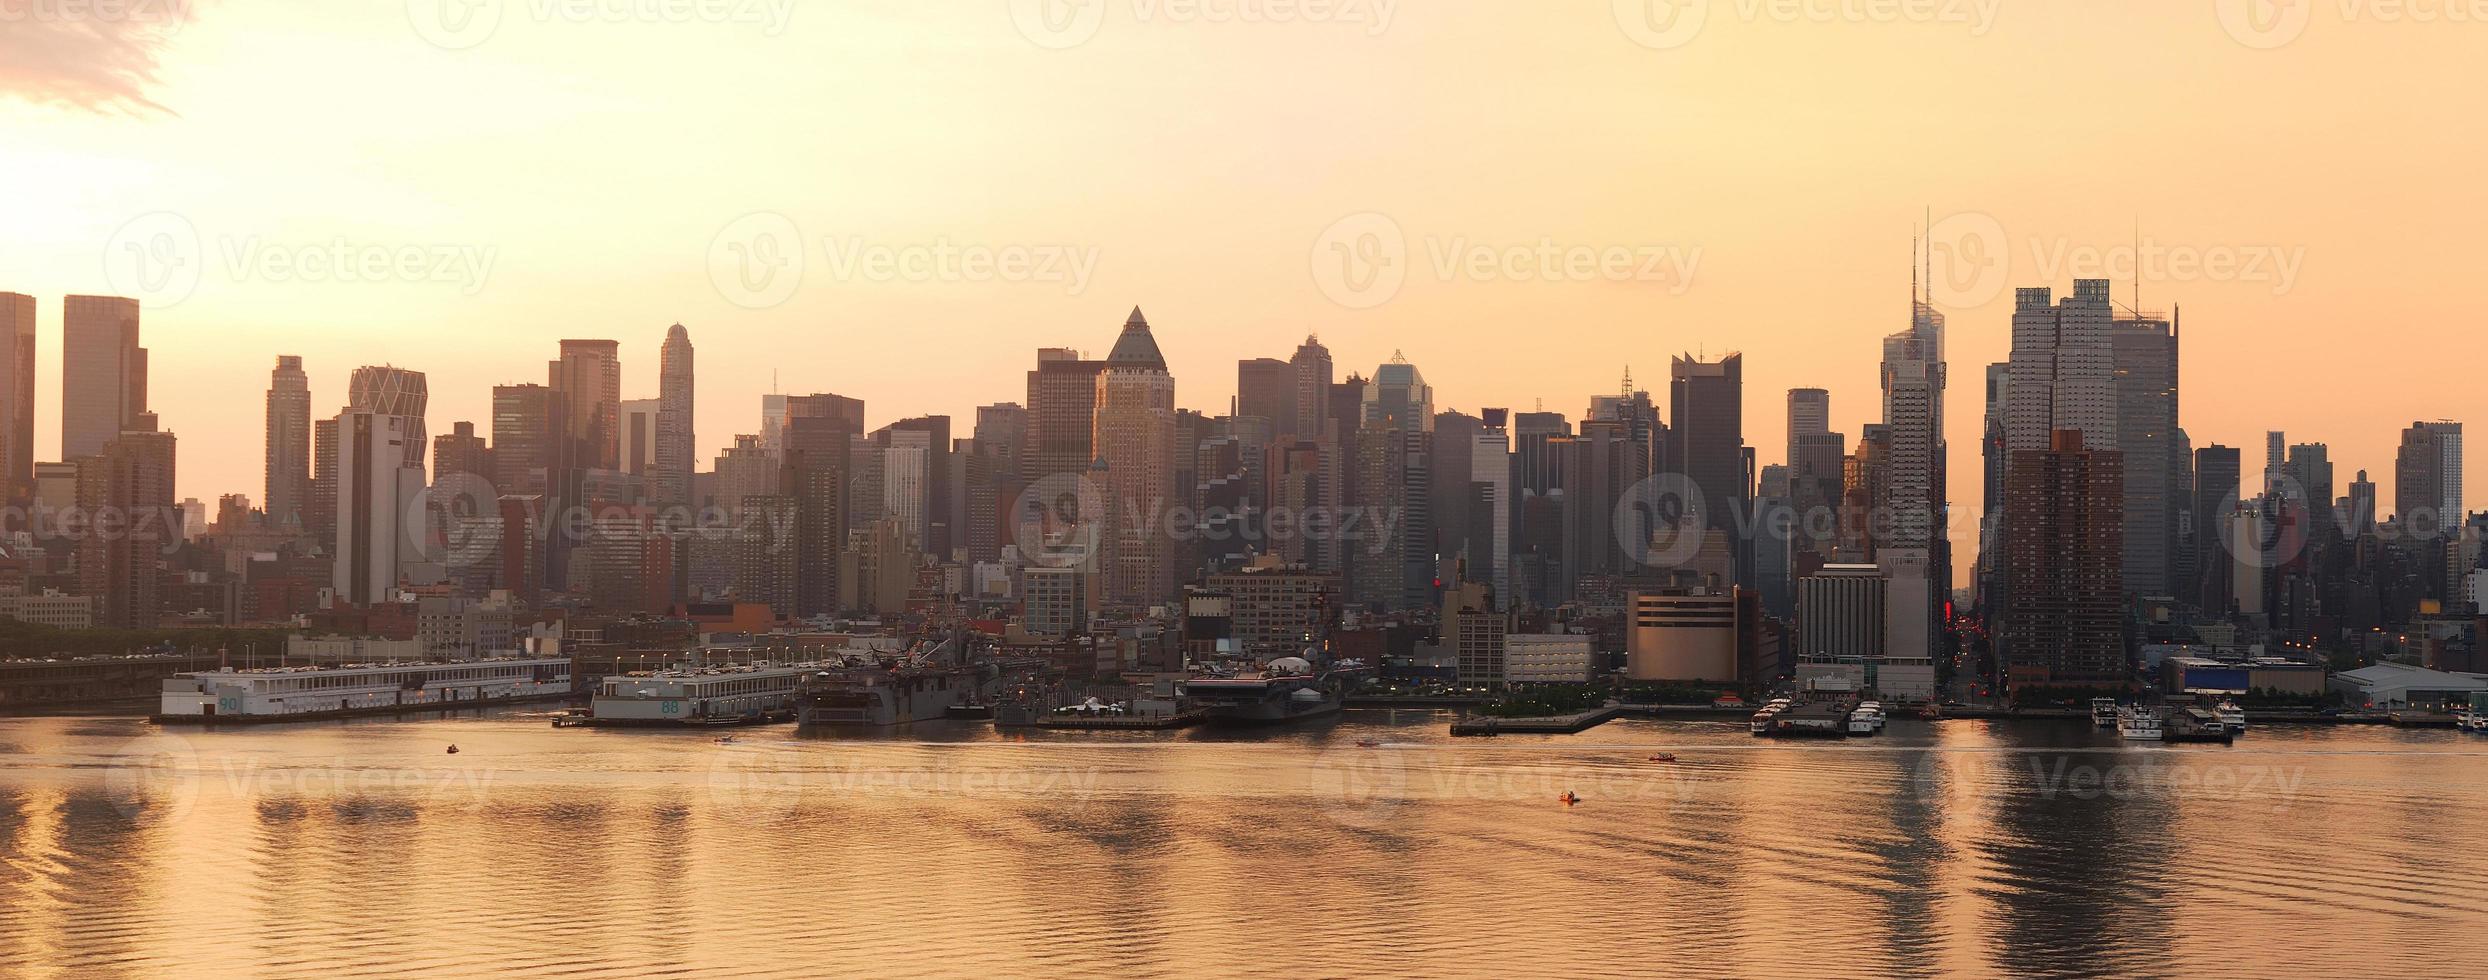 stedelijke skyline van de stad panorama, new york city foto